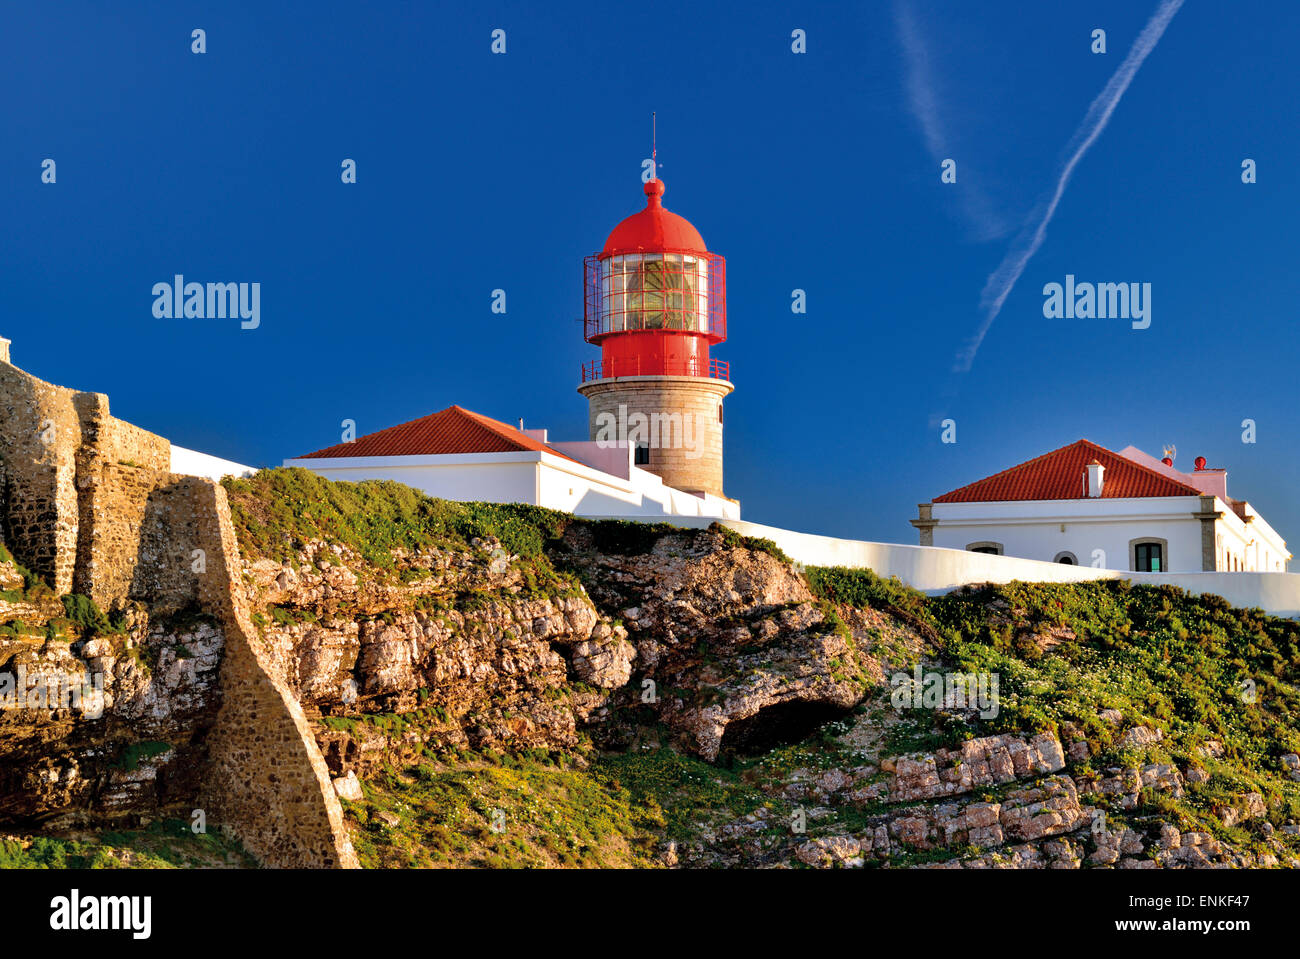 Portugal, Algarve: Faro San Vicente en el Cabo de San Vicente en Sagres Foto de stock